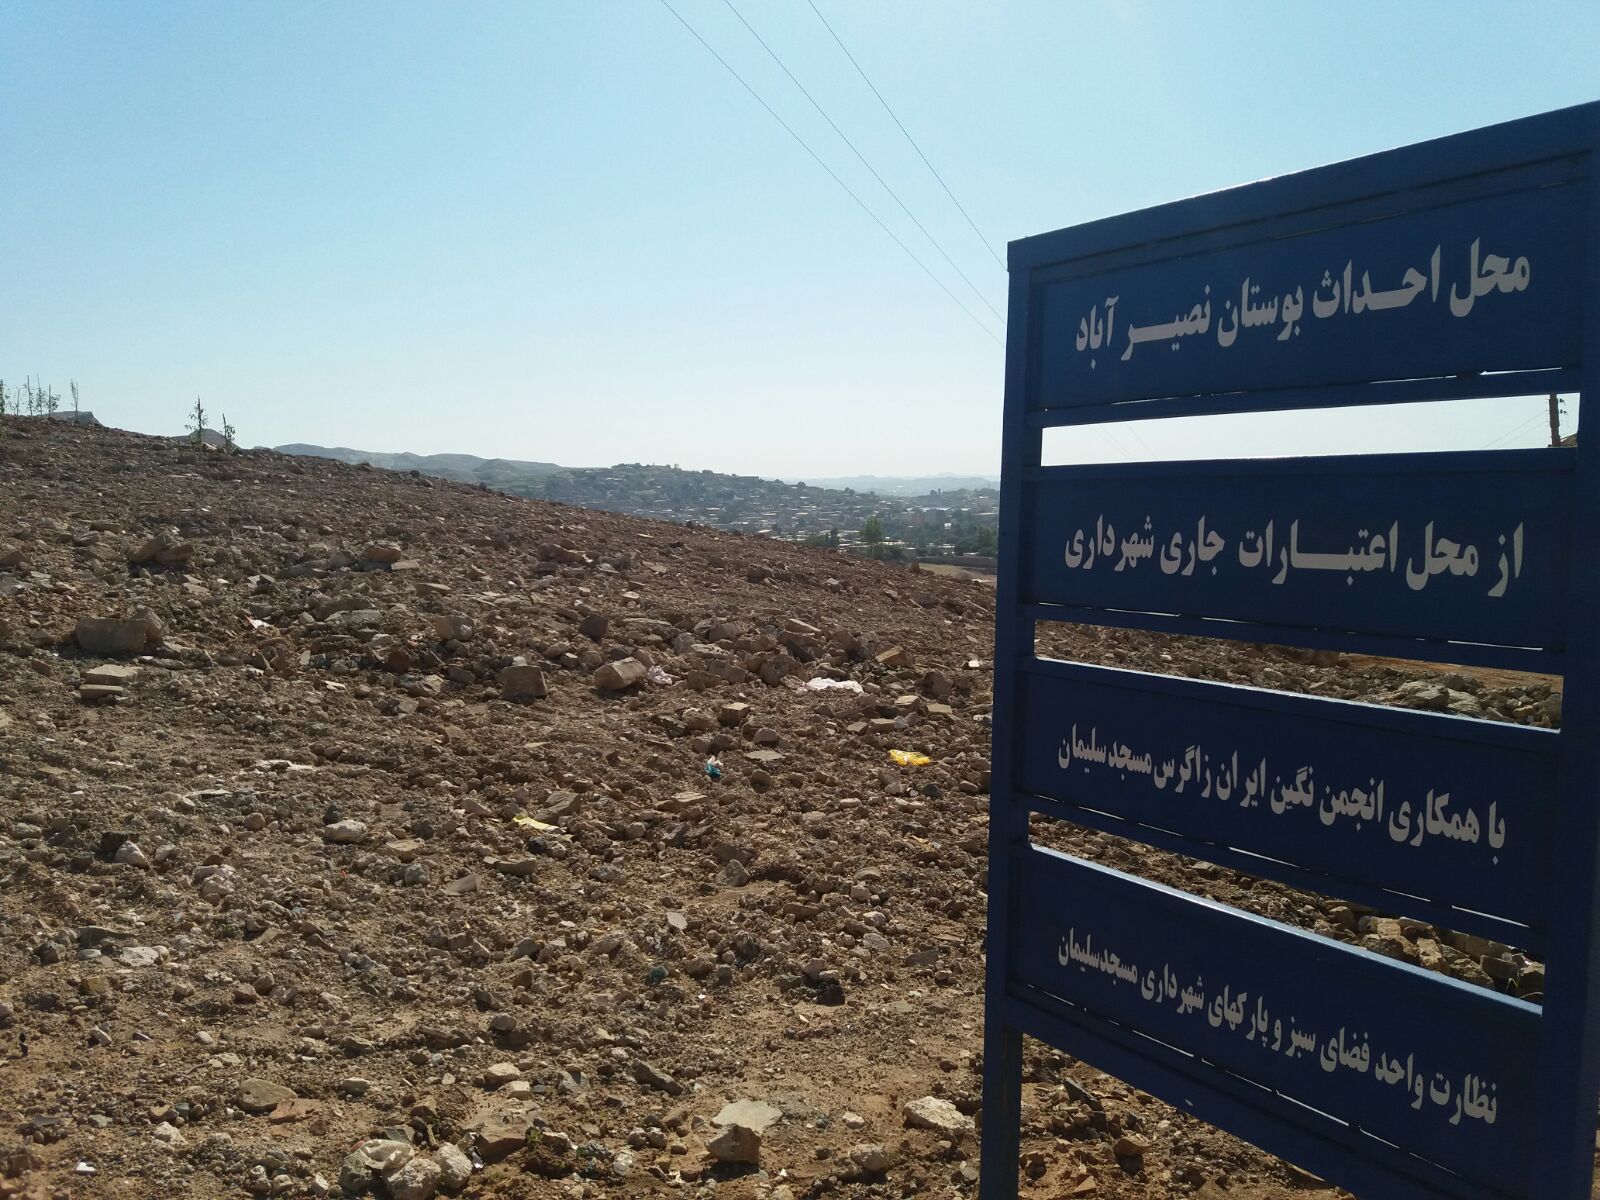 تصرف اراضی بوستان محله ای به بهانه ی کاشت درخت + تصاویر